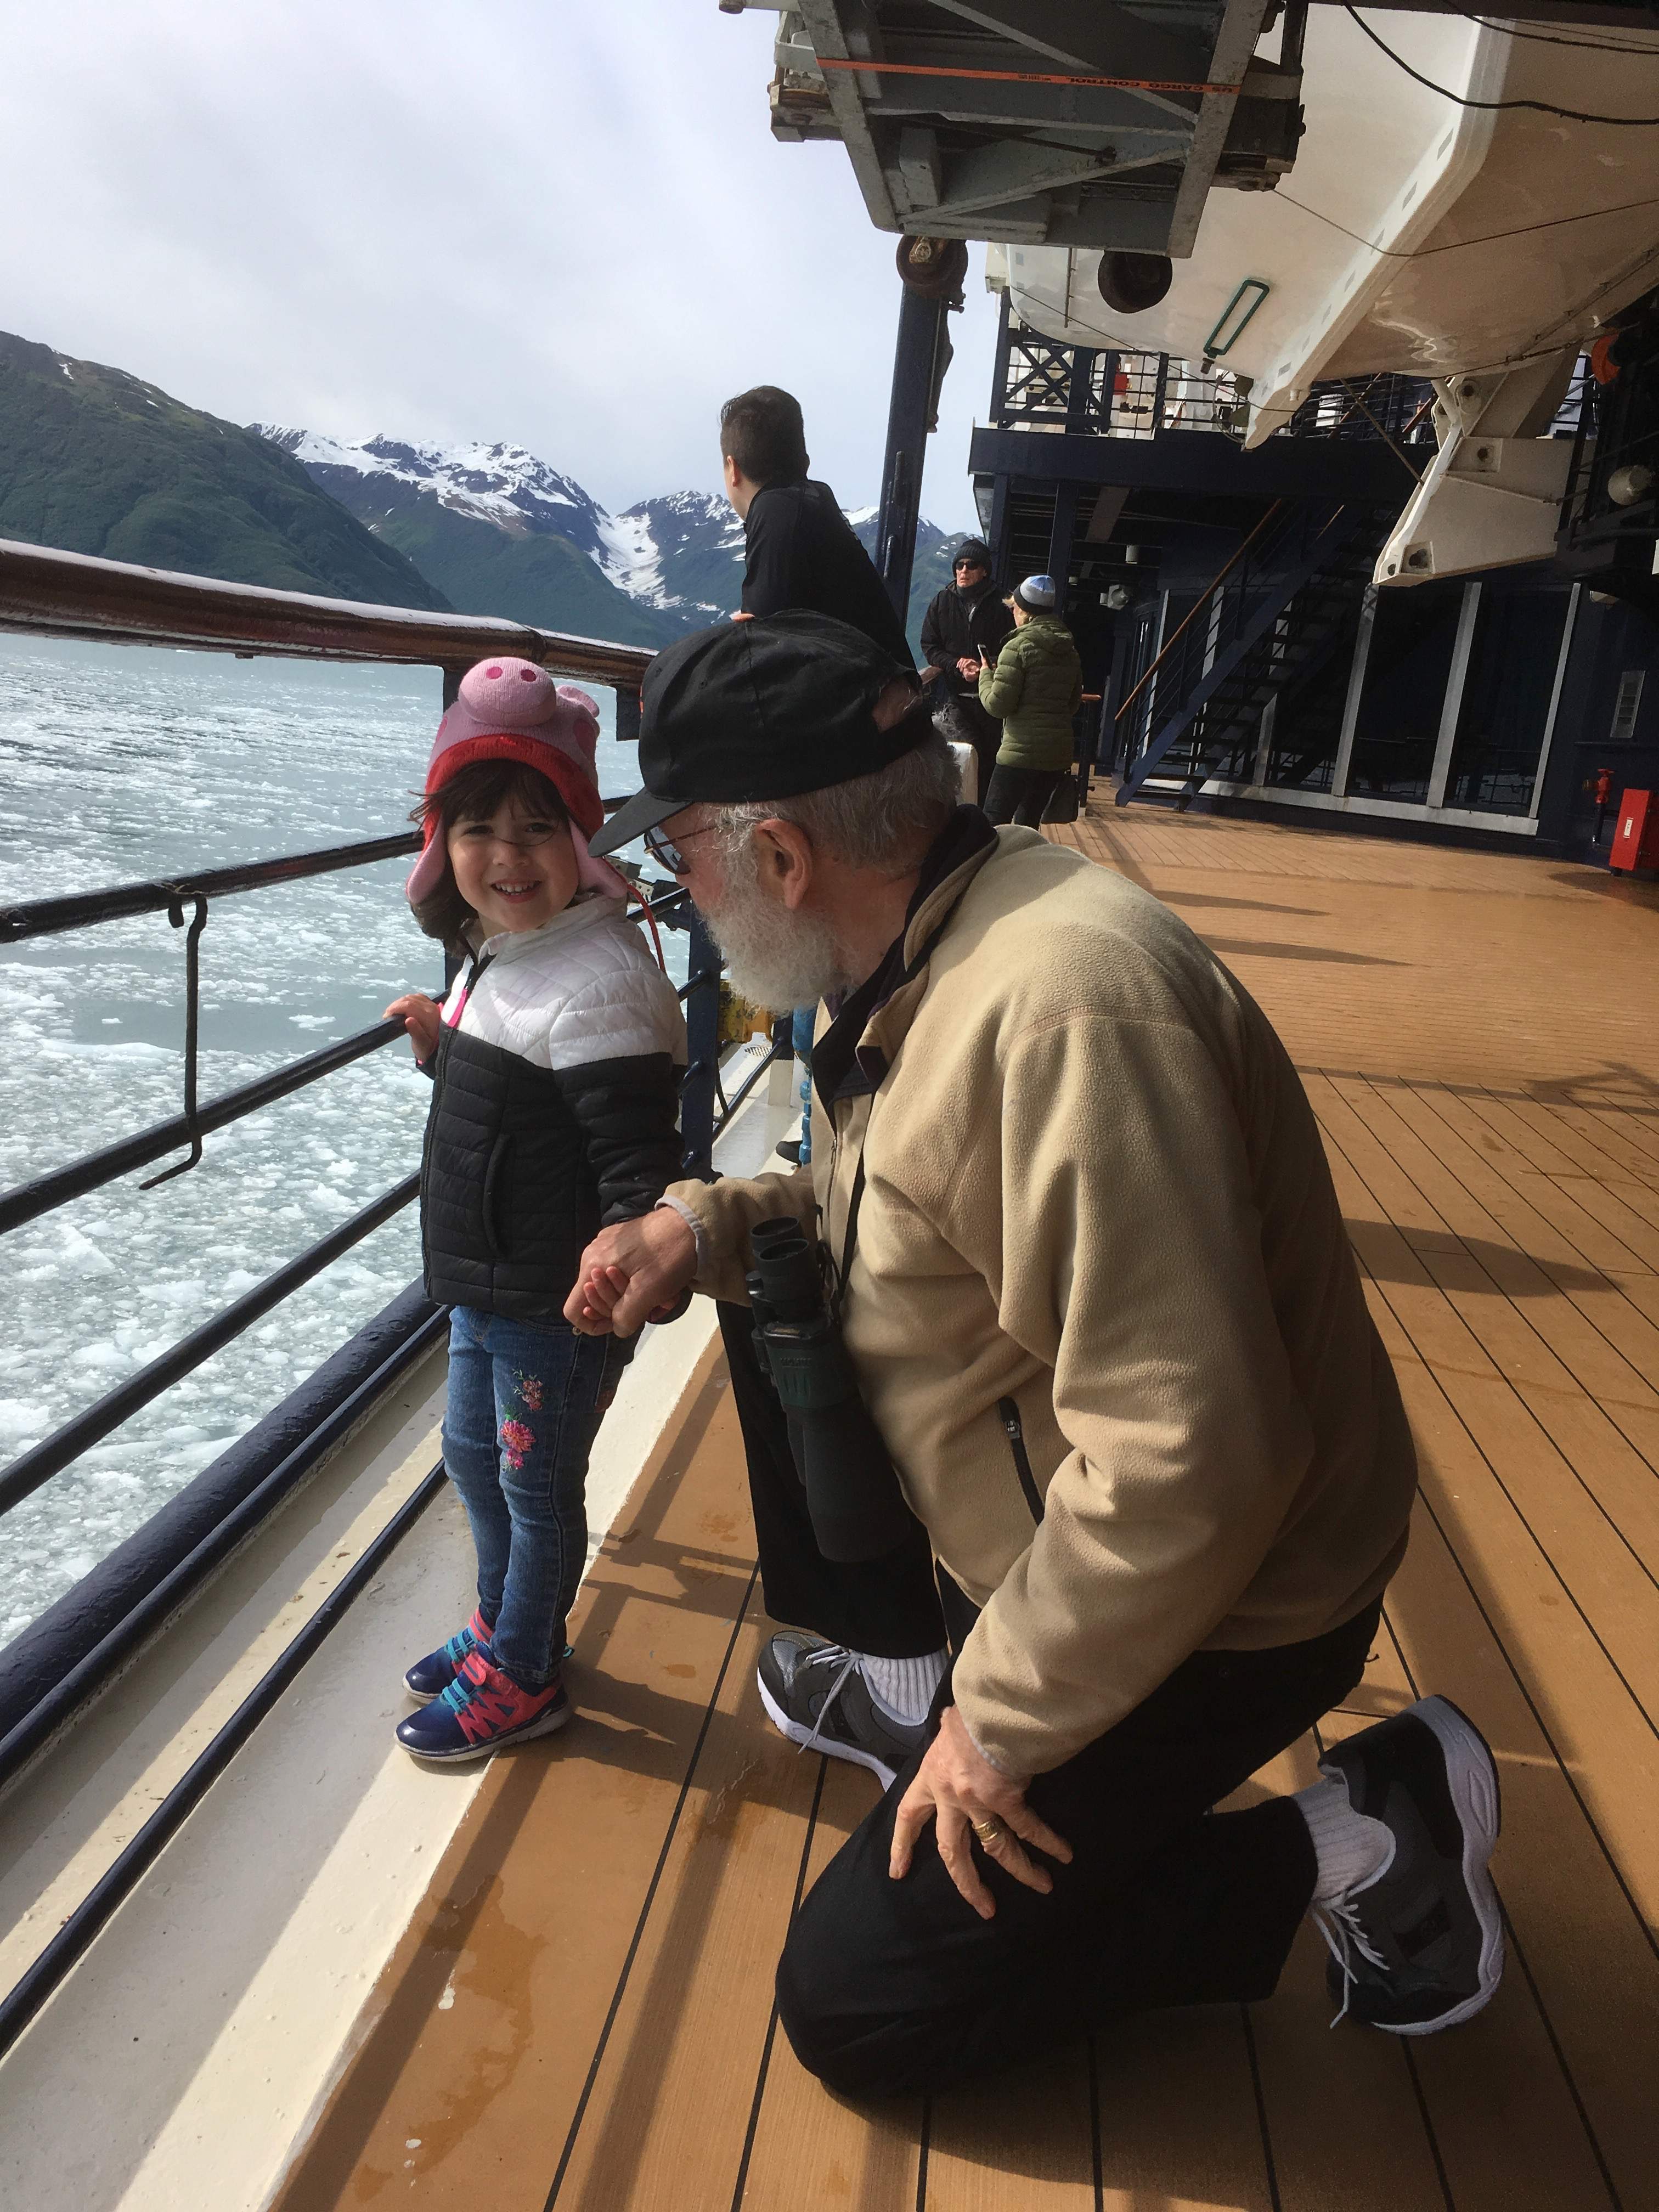 Alaskan Adventure - Family, Food, and Exploring